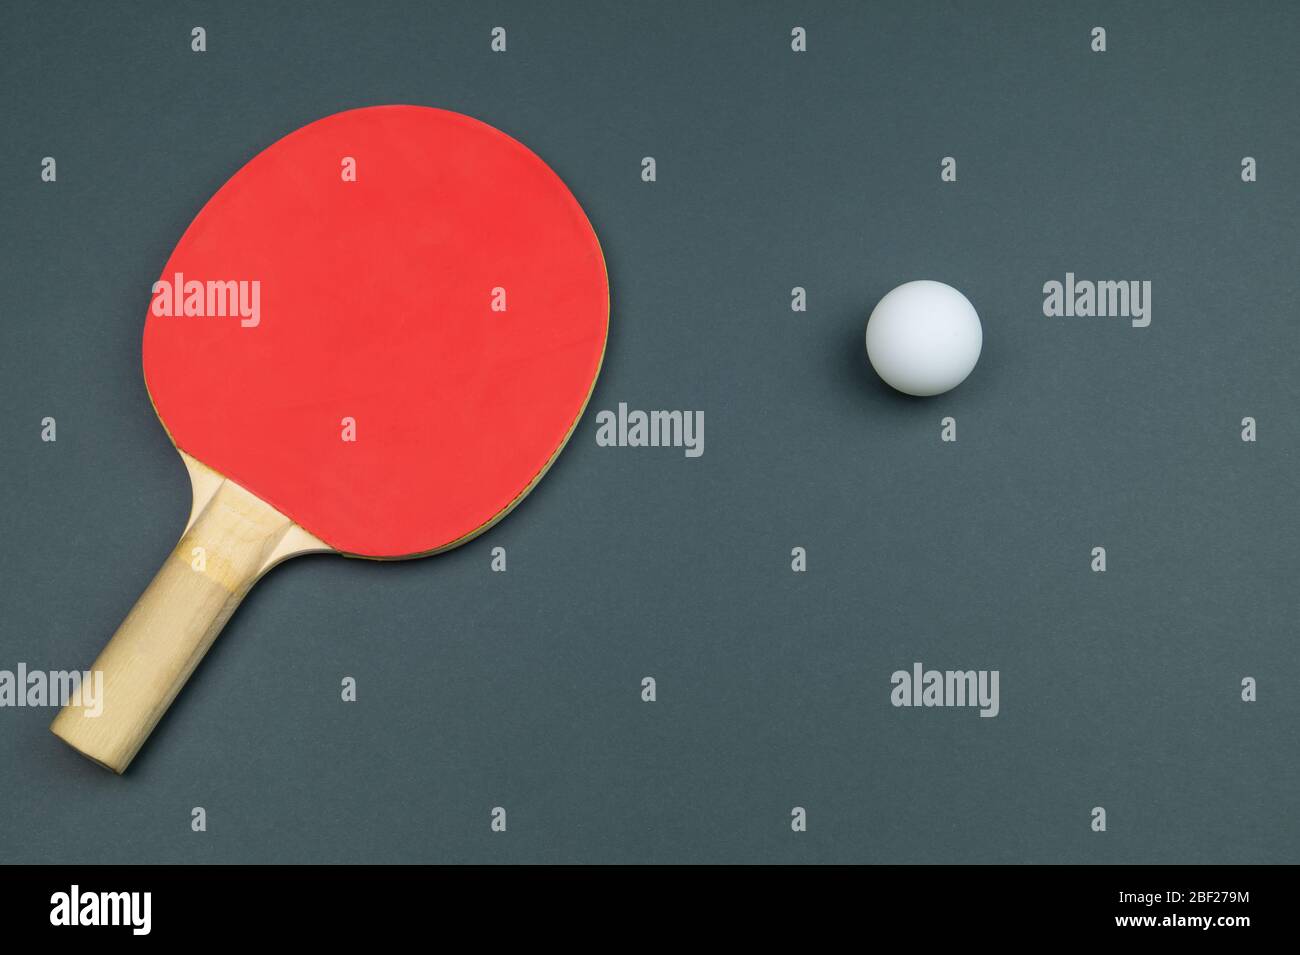 Raquette de tennis de table rouge avec une balle isolée sur un fond coloré. Équipement de sport pour ping-pong. Espace de copie Banque D'Images